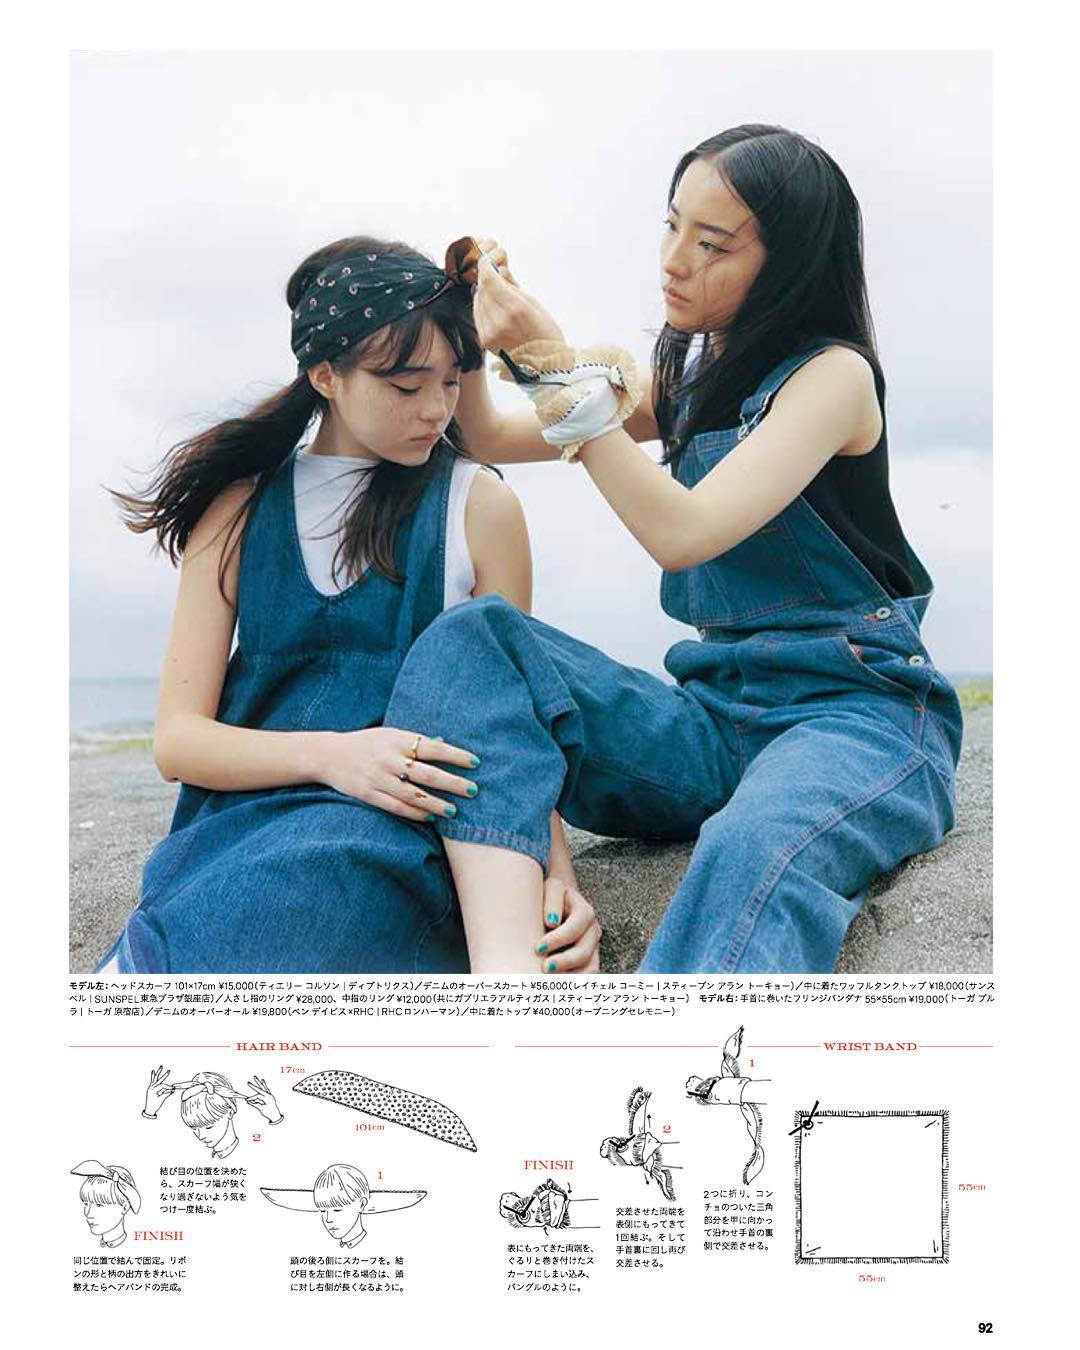 Ginzamagazine 髪飾り バッグ ワンピース 1枚の布でできることって 巻き方次第で色々なアイテムに変身するテキスタイルの11の使い方を考えてみました お気に入りの柄を見つ Wacoca Japan People Life Style